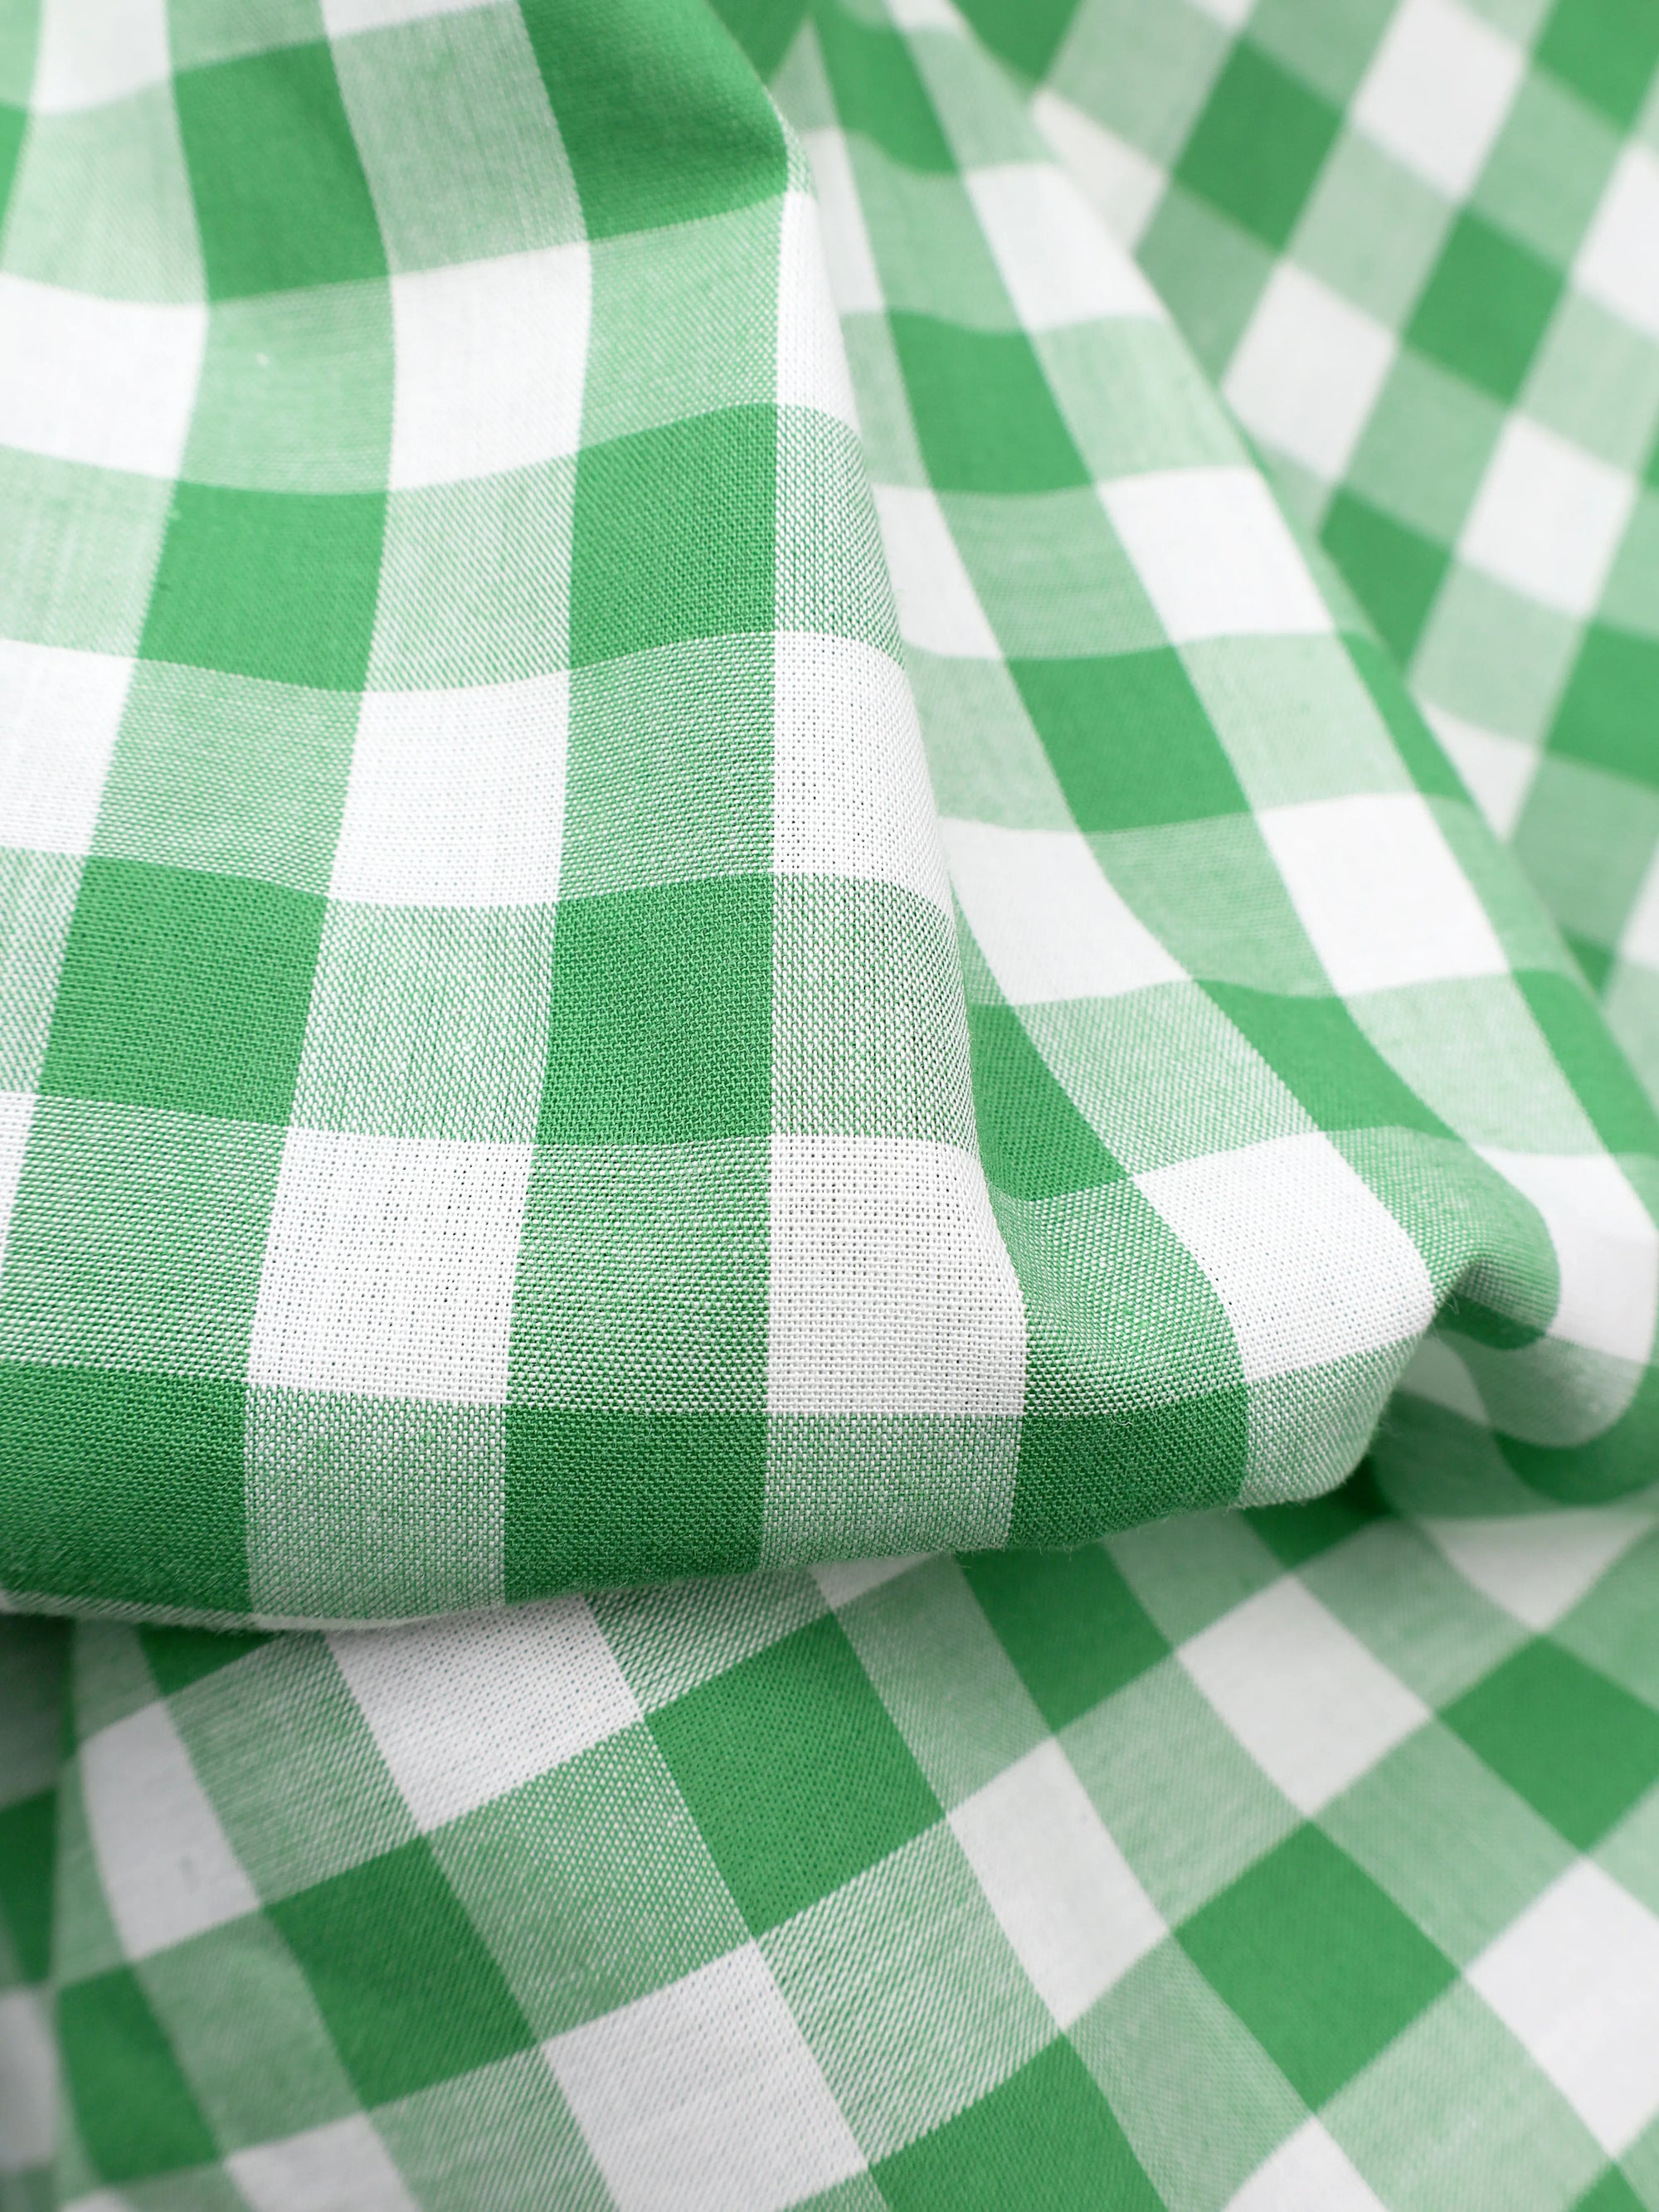 Green White Checks Premium Cotton Shirt